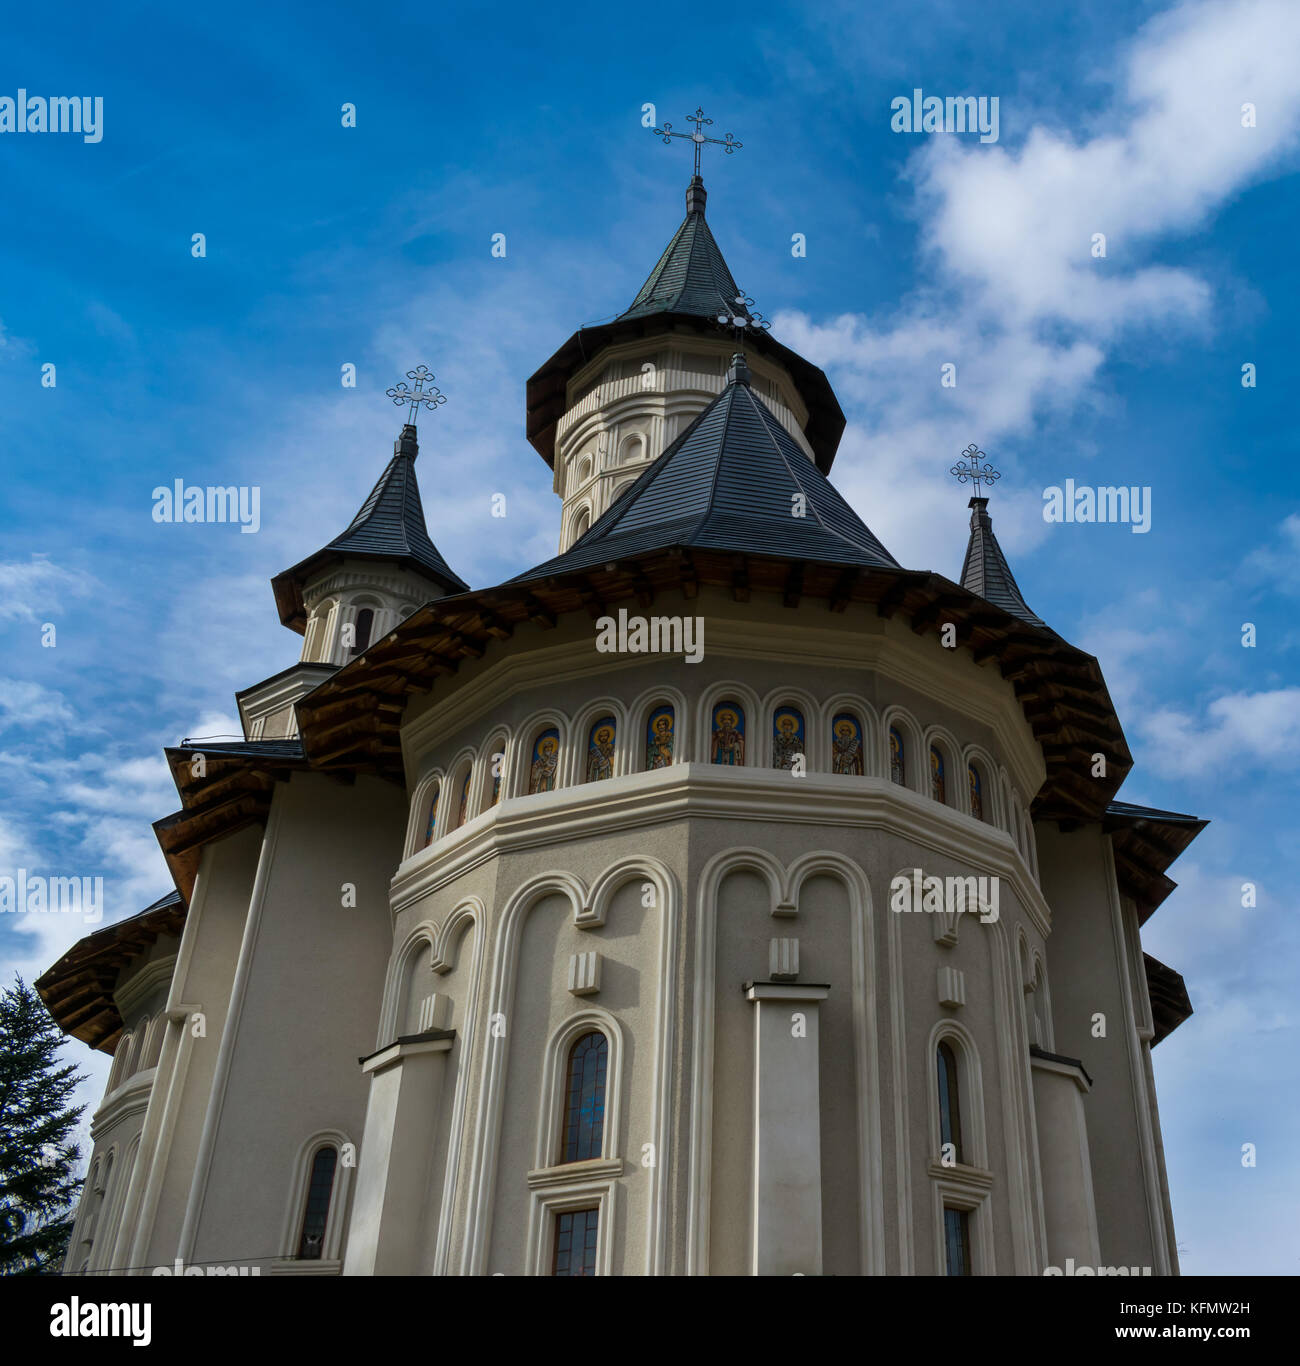 Tradizionale chiesa ortodossa romena in Europa orientale Foto Stock